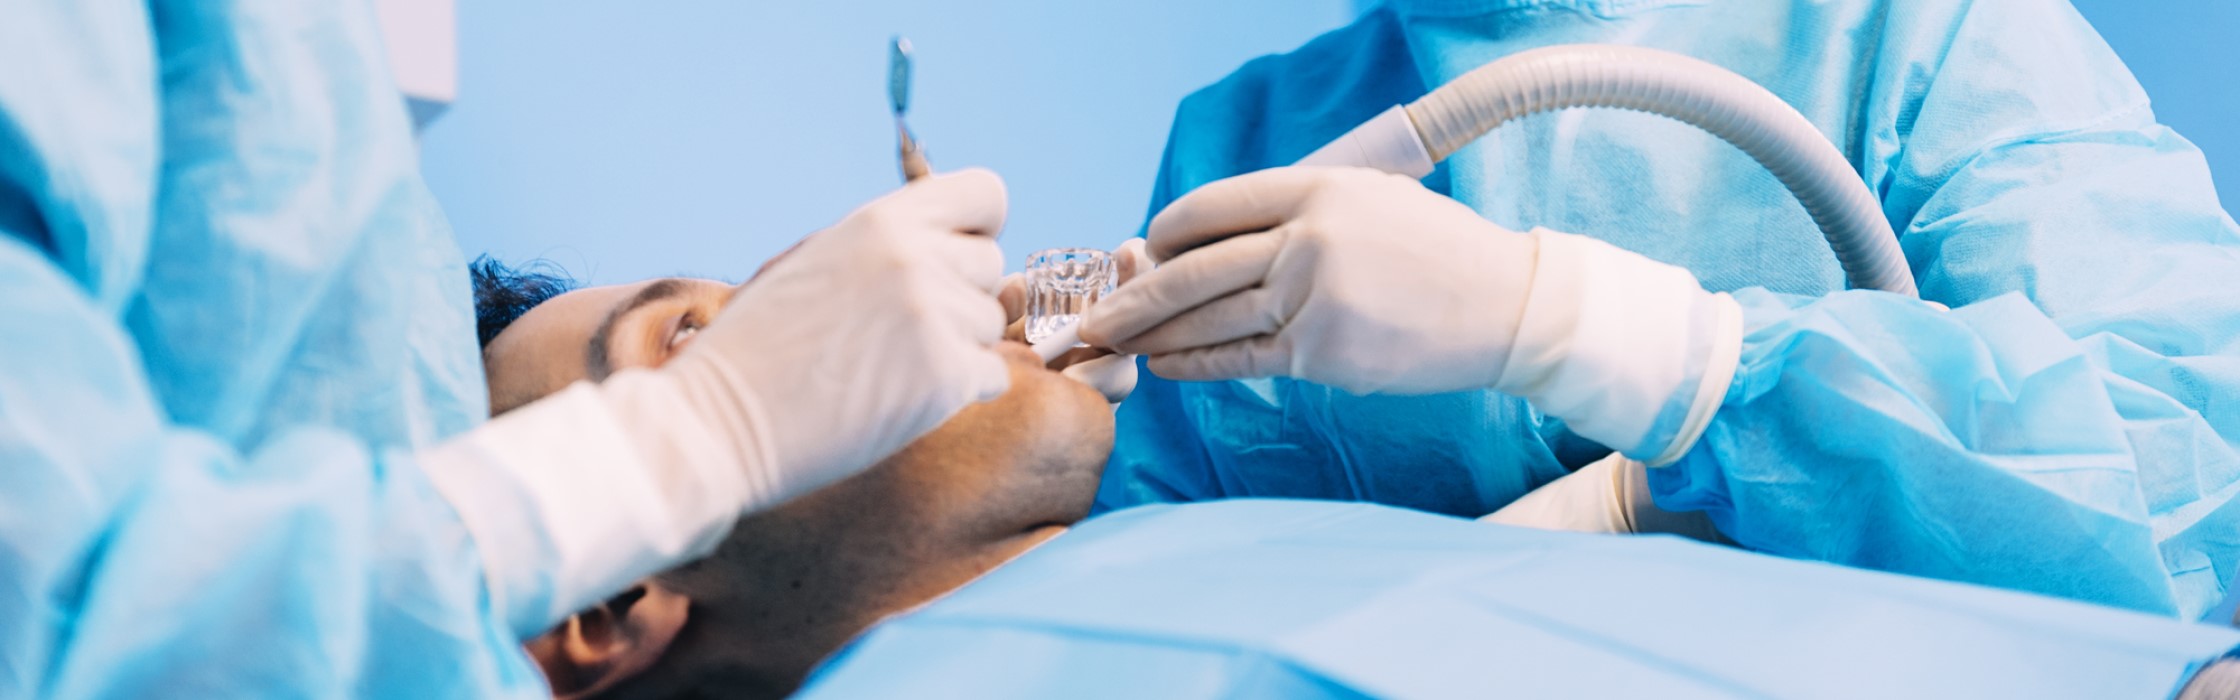 Vestibulumplastik: Präprothetische Chirurgie